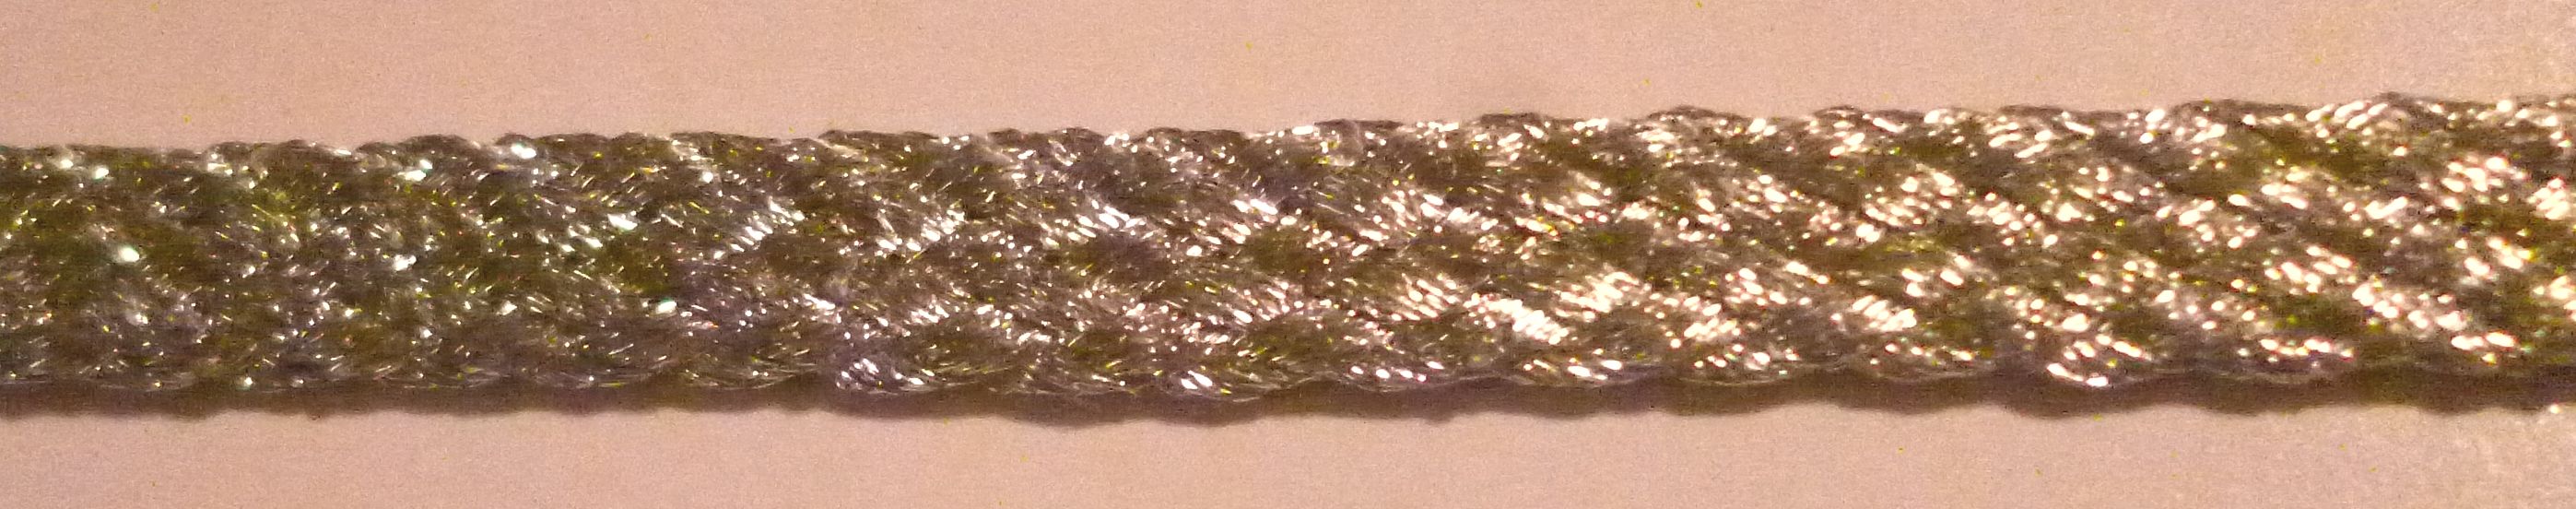 Mentezsinór, paszományzsinór  5 mm széles, fémszálas csillogó ezüst. 300Ft/m 